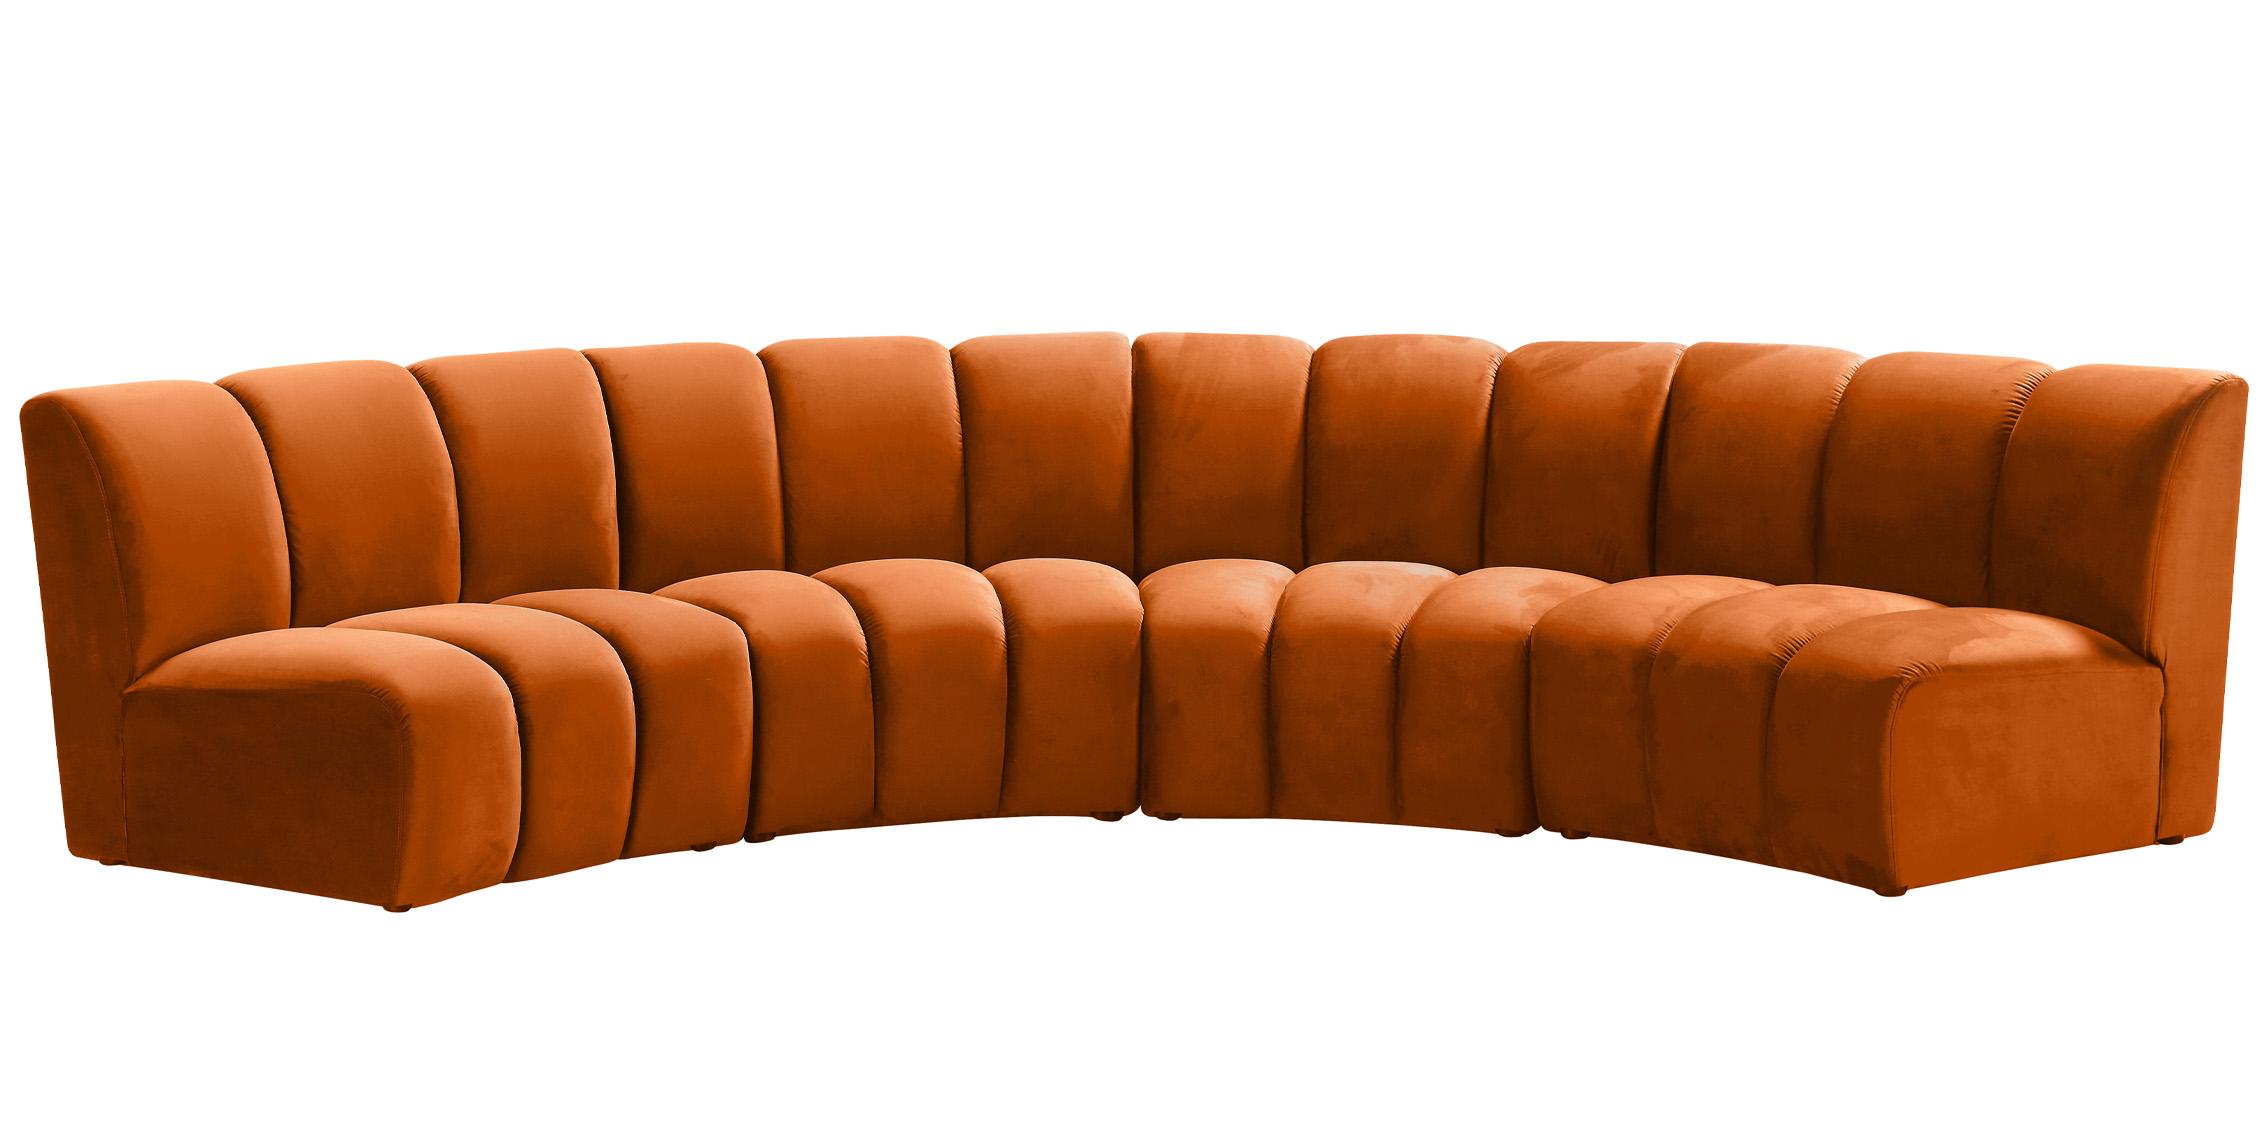 

    
638Cognac-4PC Meridian Furniture Modular Sectional Sofa
